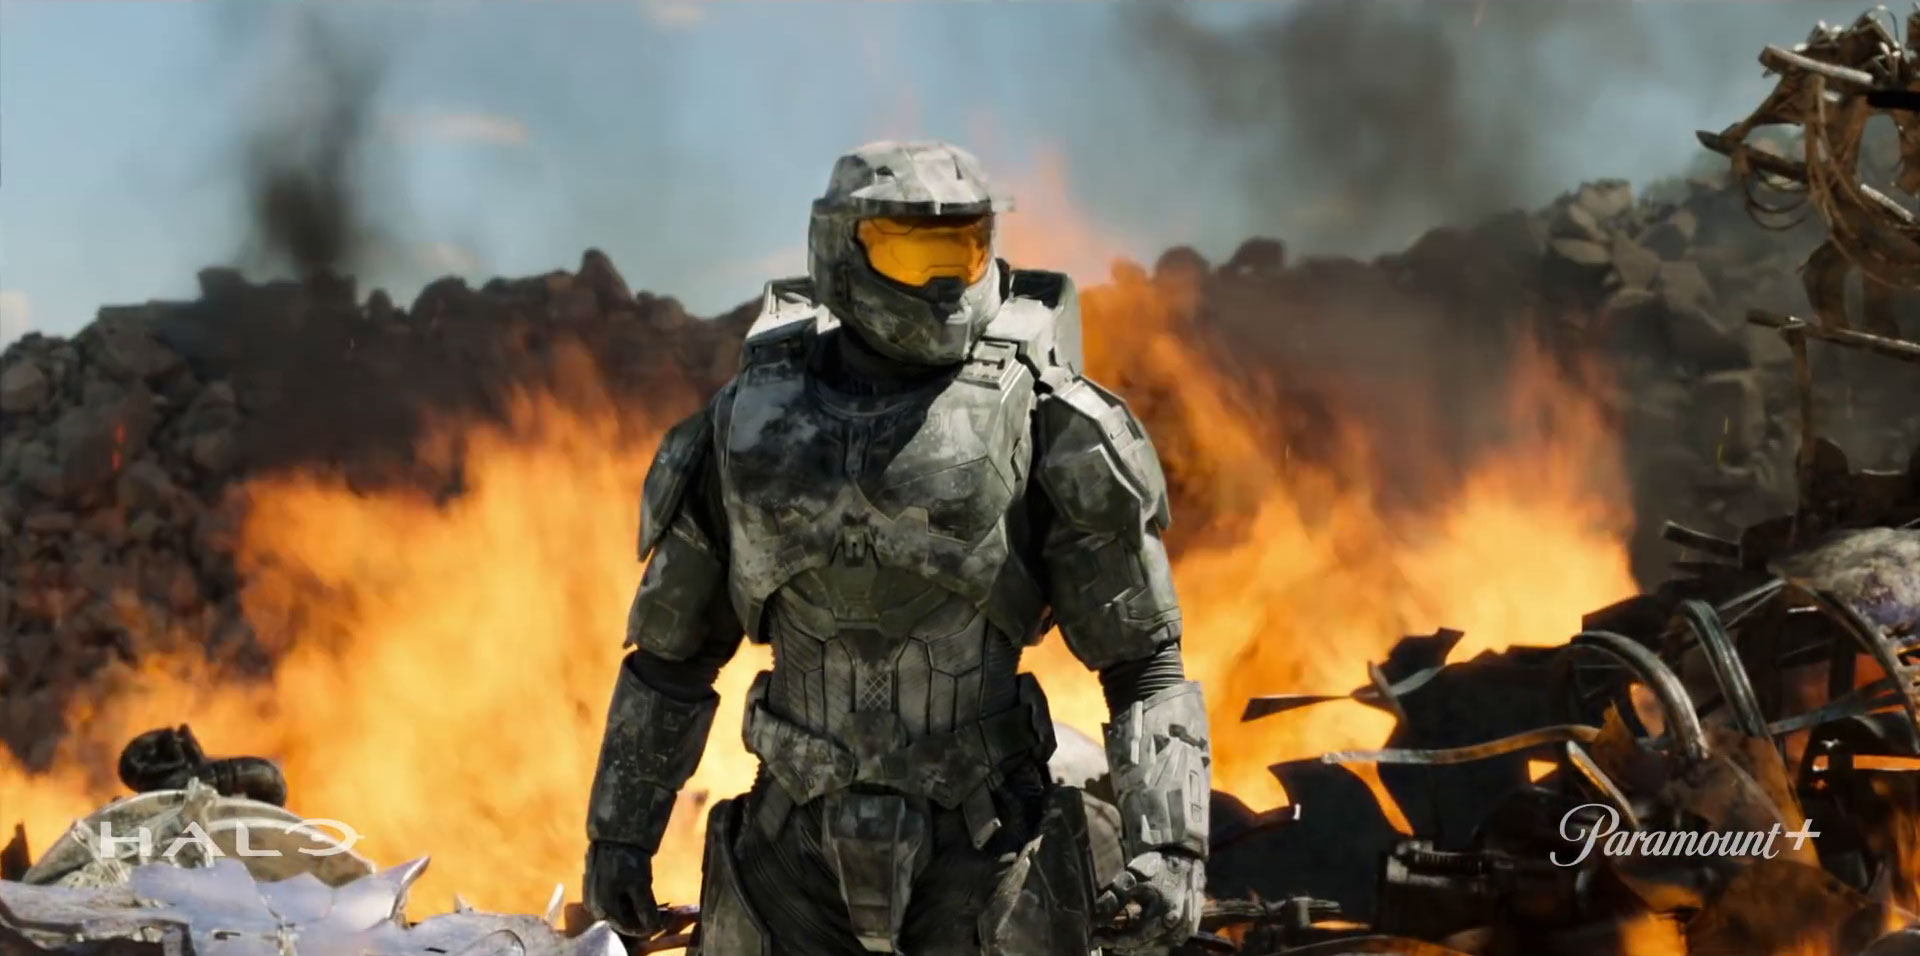 Halo': Série sci-fi adaptada da franquia de games ganha trailer